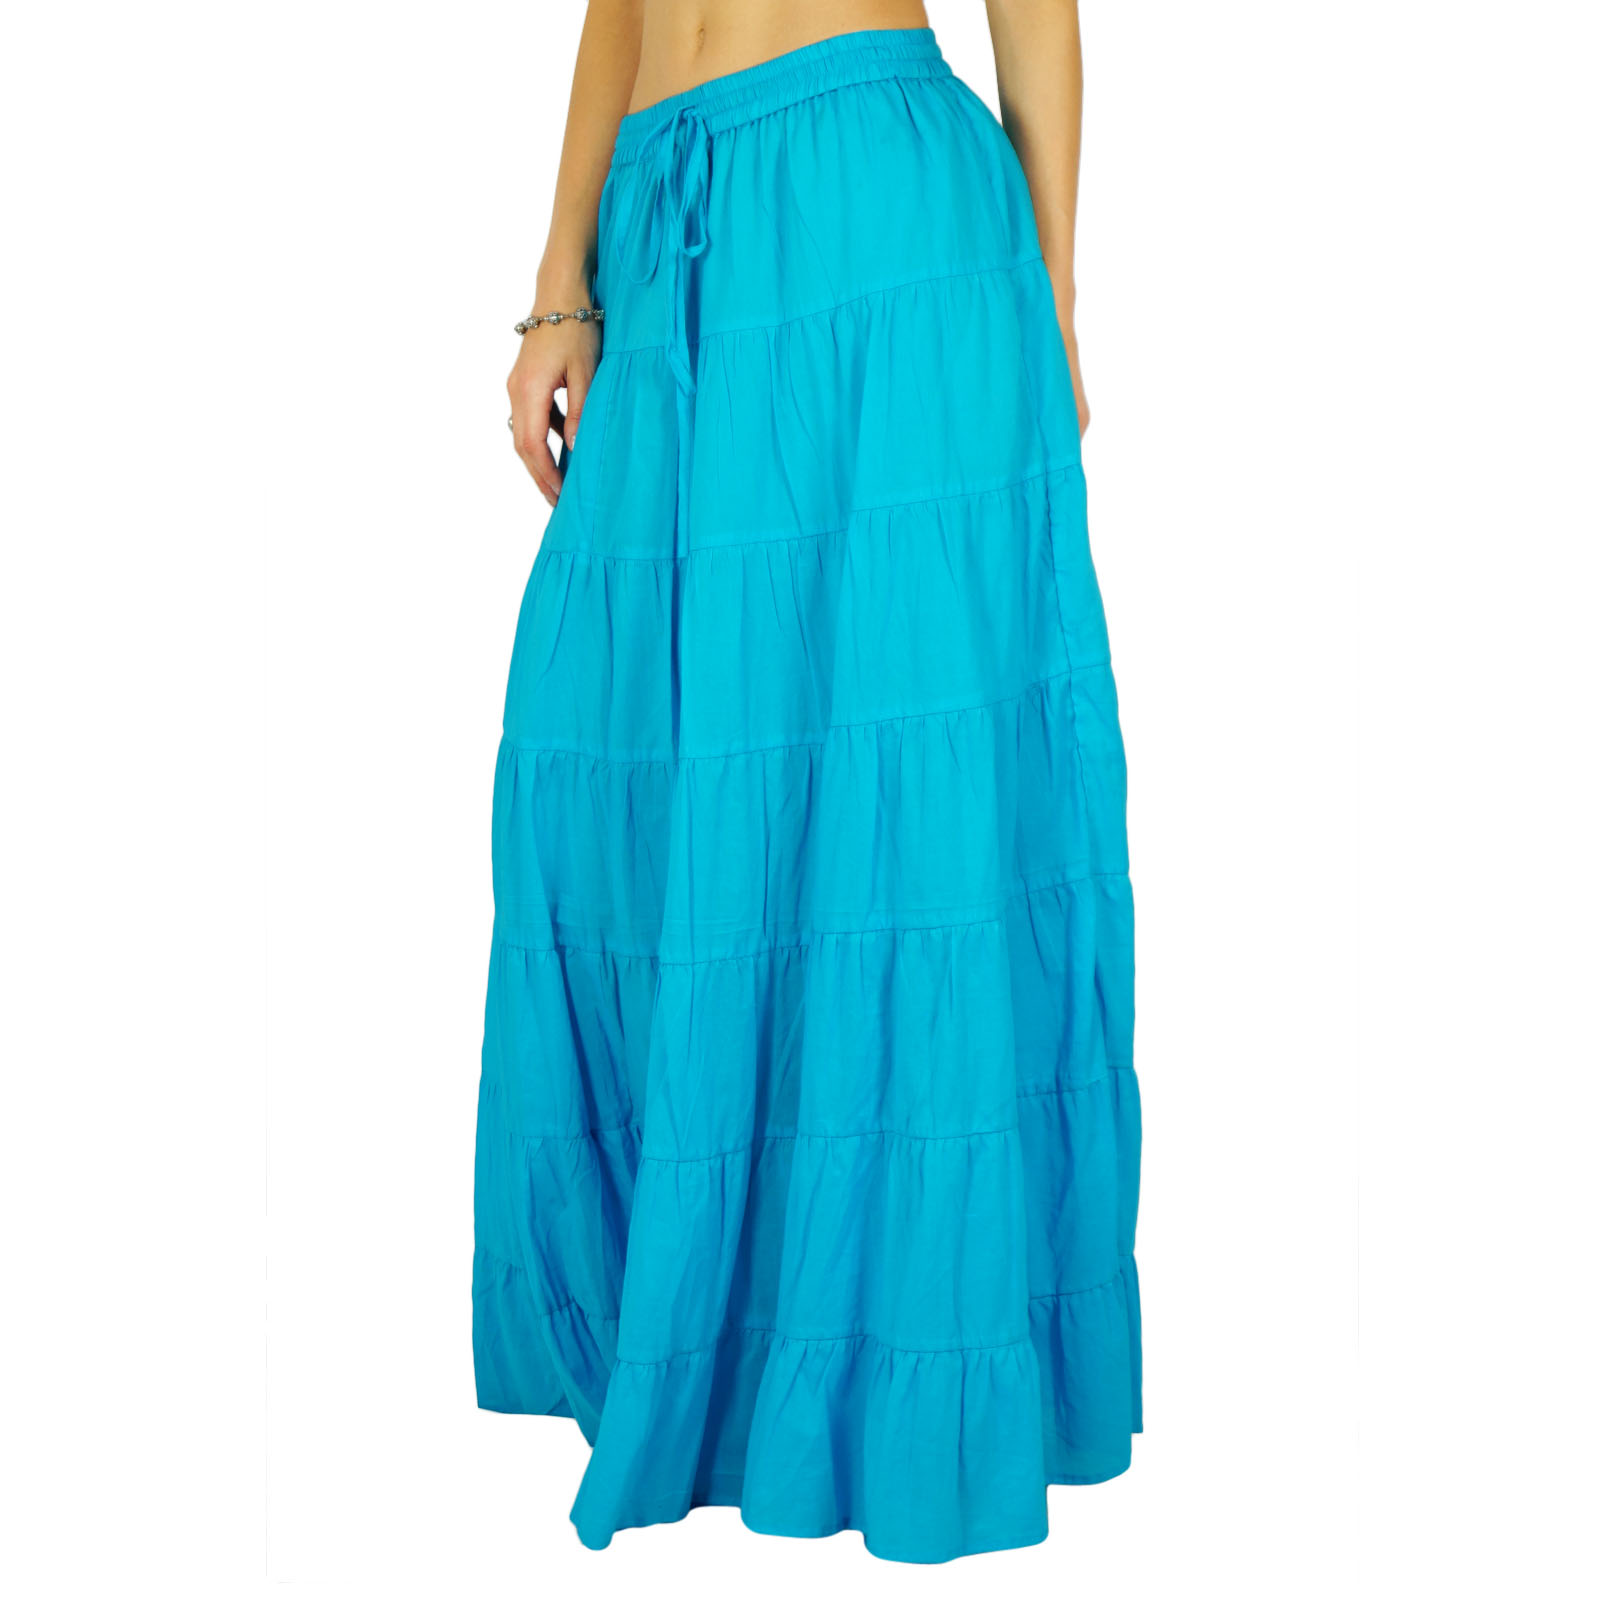 Skirt Long Maxi Skirt Beach Wear Cotton Summer Wear Clothing US-10|EX ...